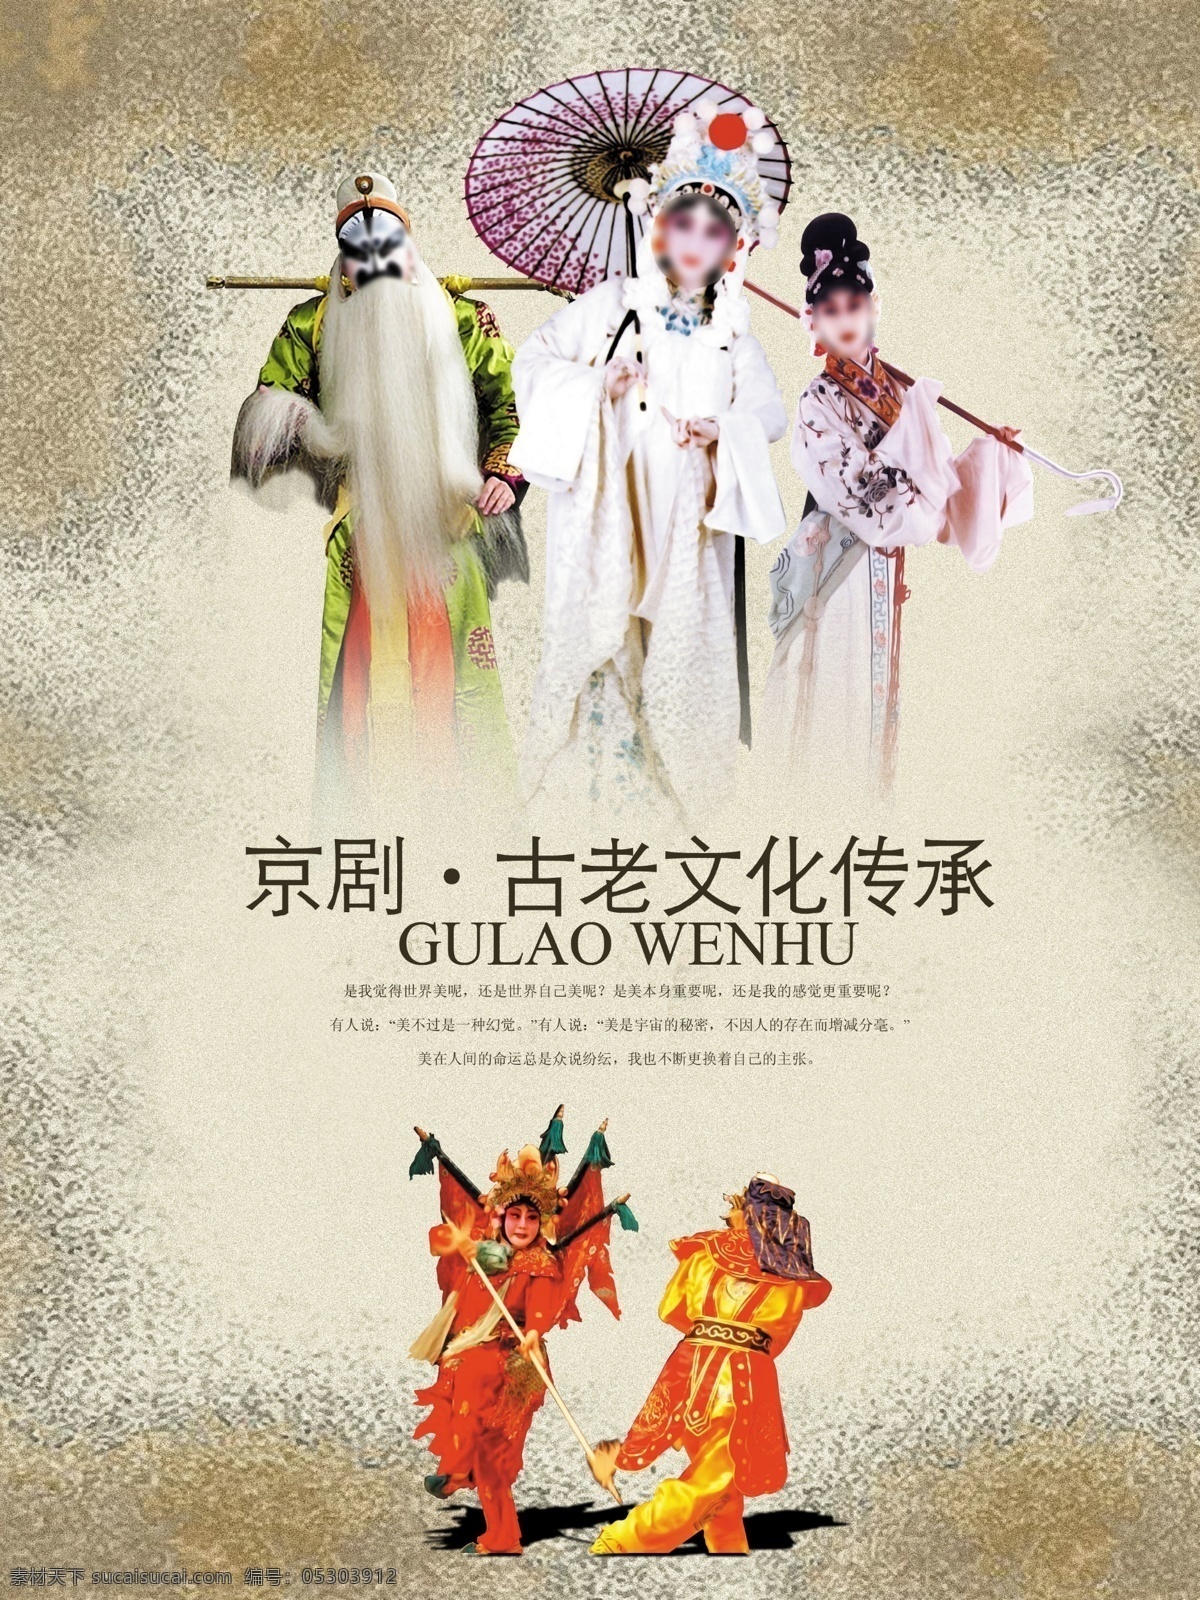 京剧 古老 文化 传承 中国传统元素 中国风 古老文化传承 原创设计 原创海报